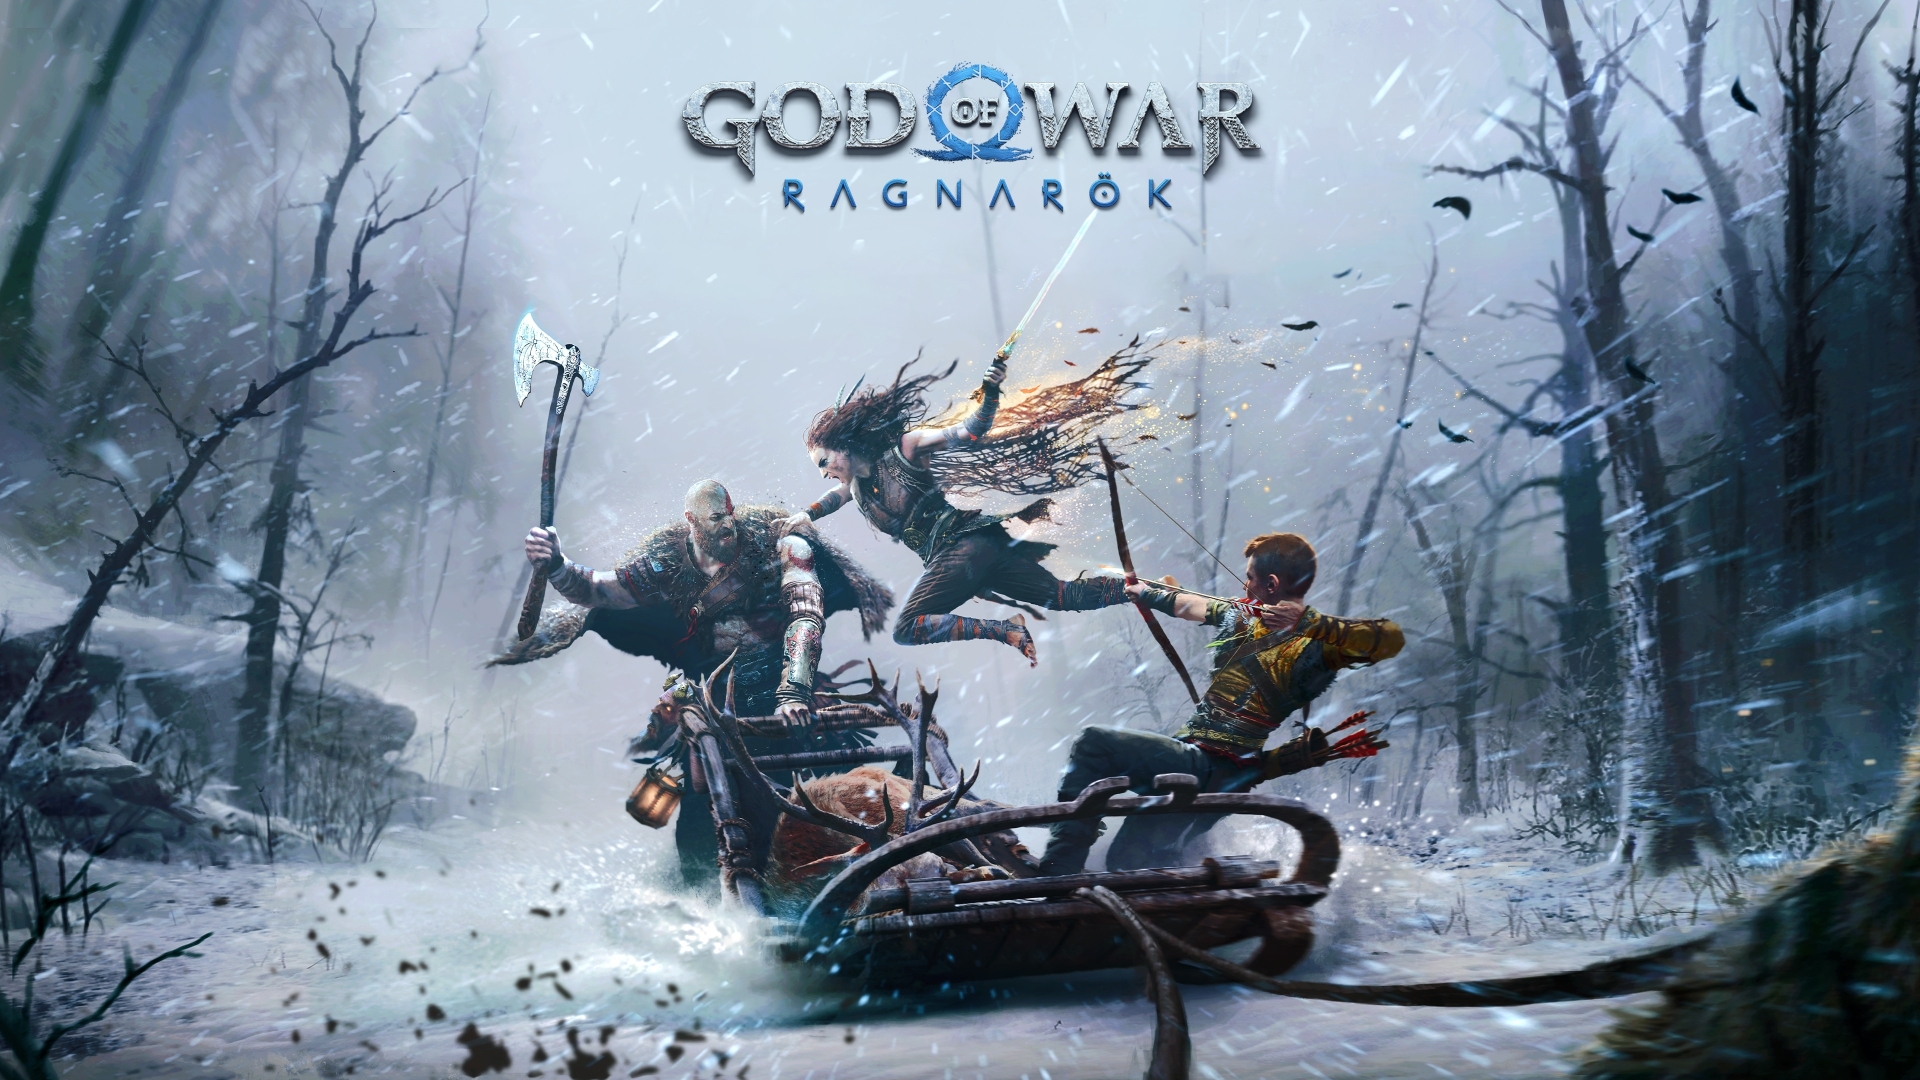 god of war ragnarök reddit download free